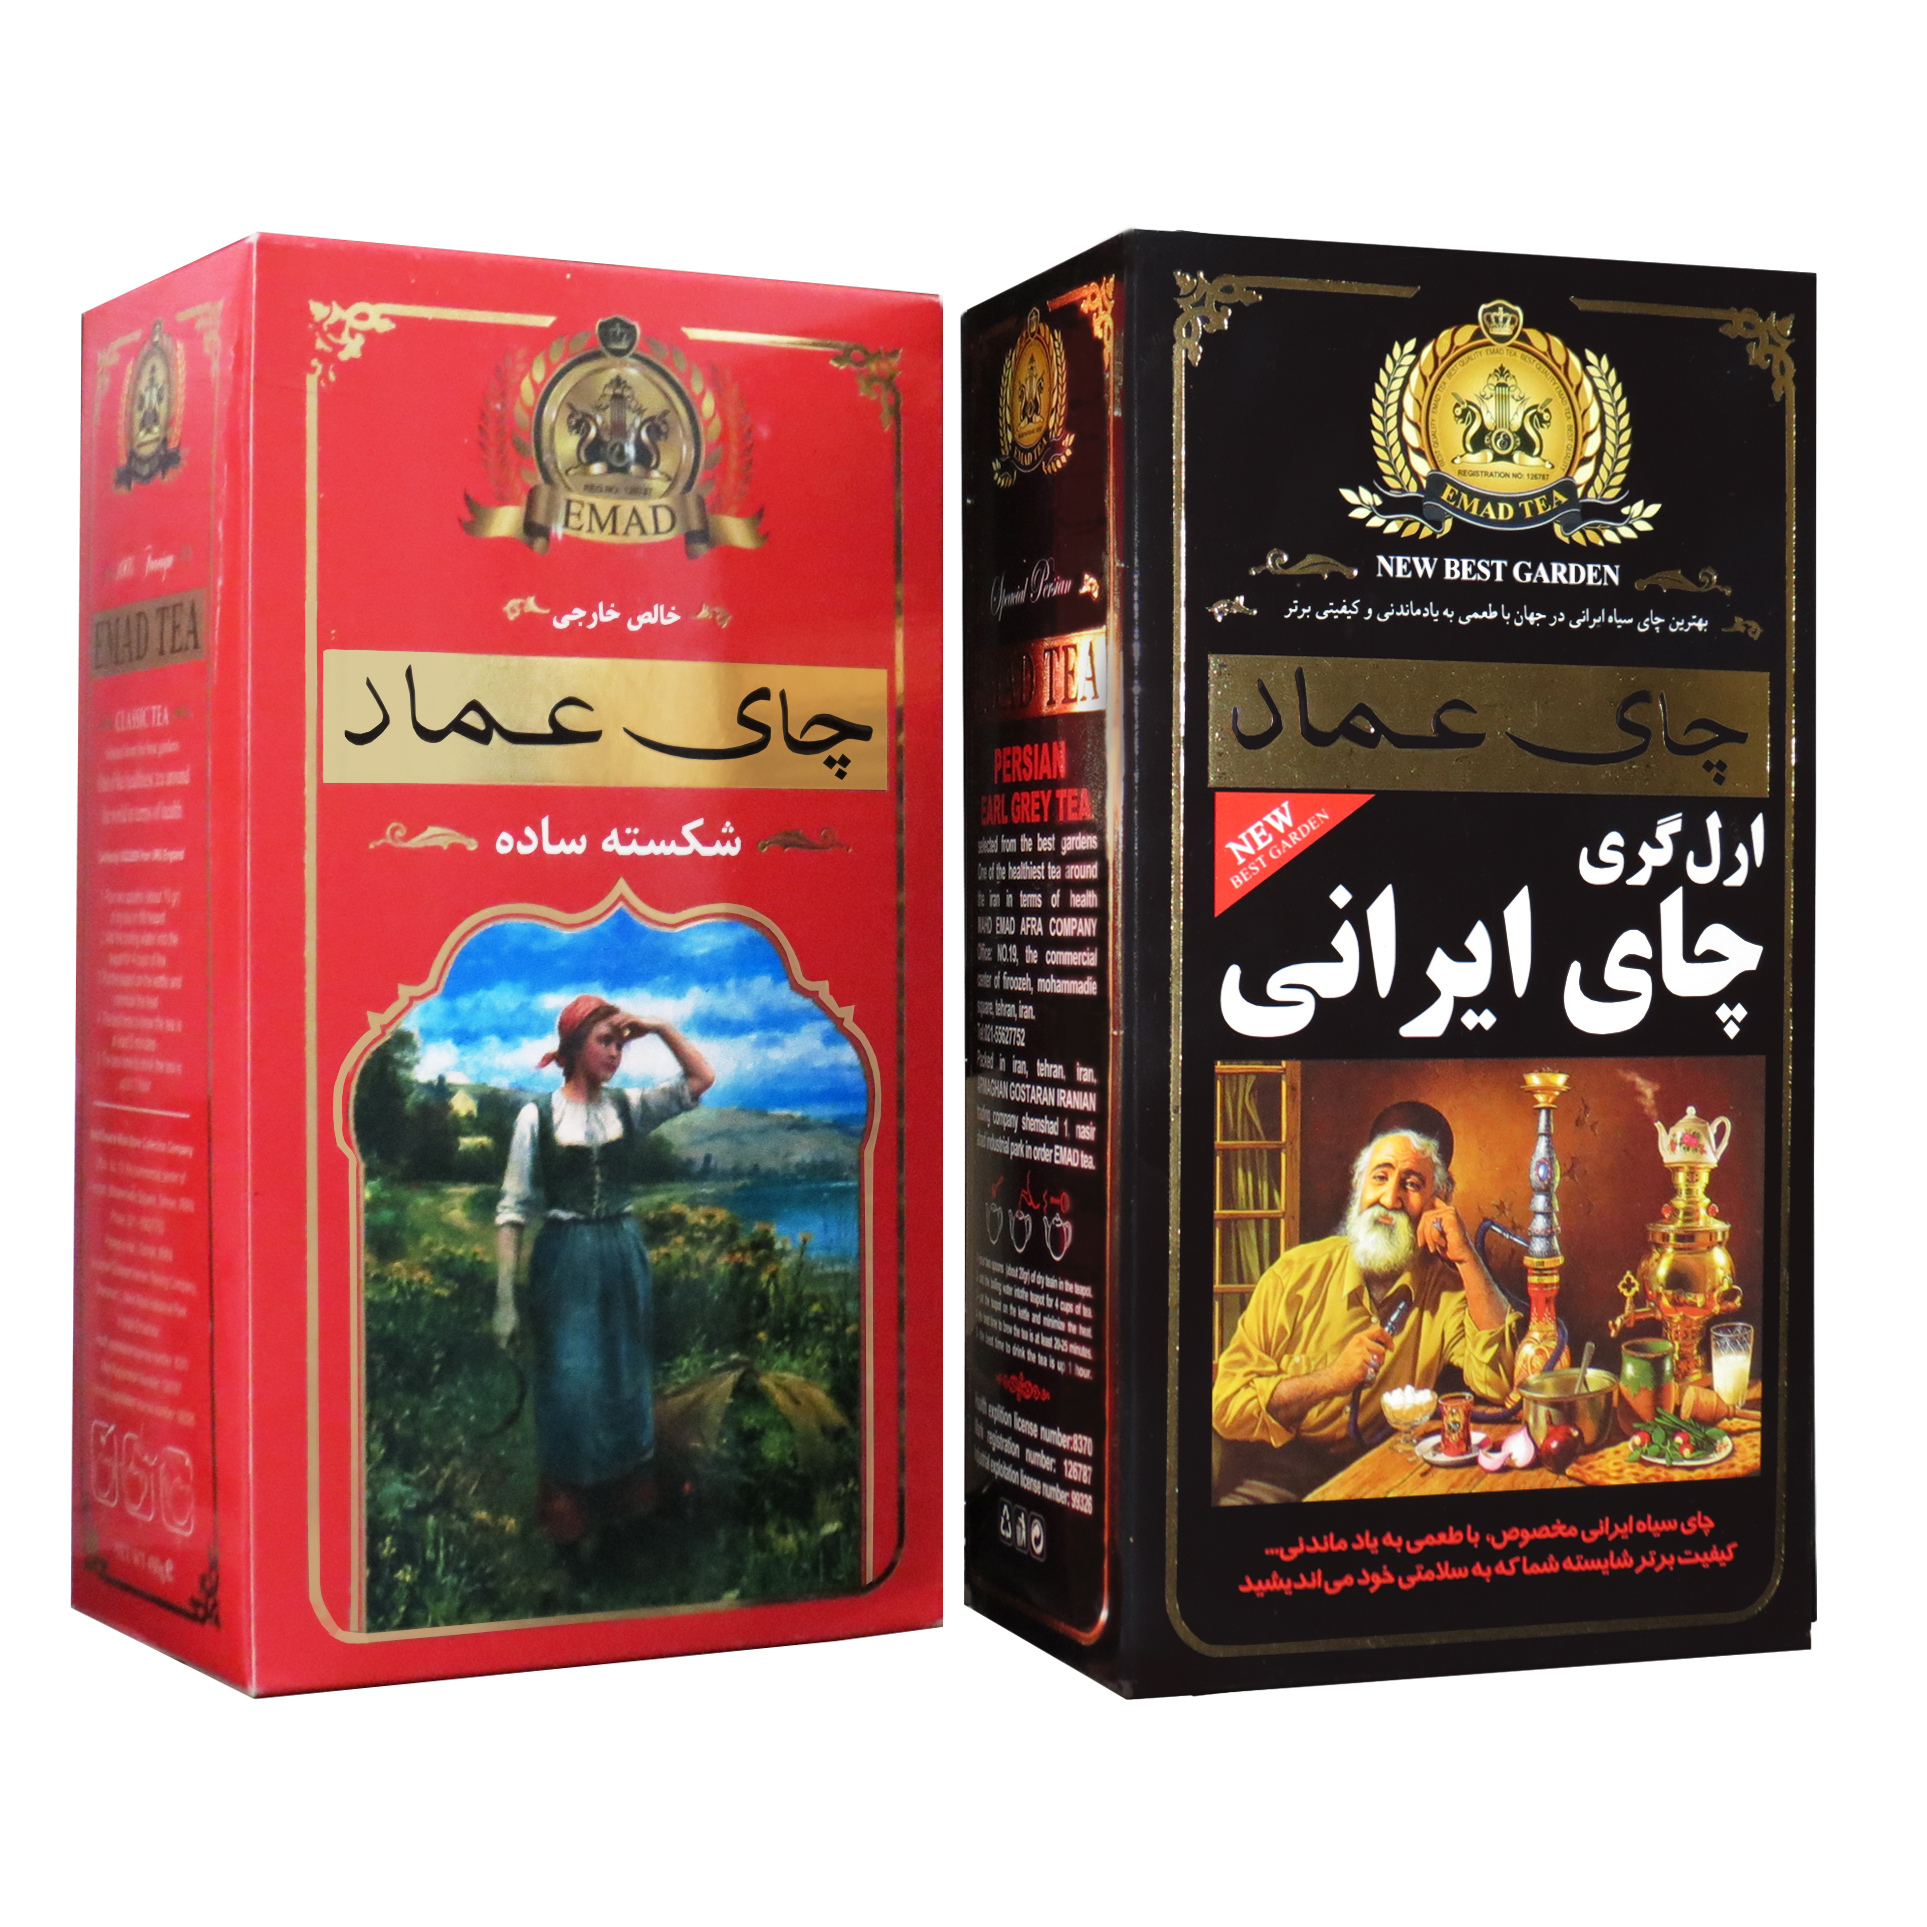  چای ایرانی عطری عماد - 400 گرم به همراه چای خارجی ساده عماد - 450 گرم